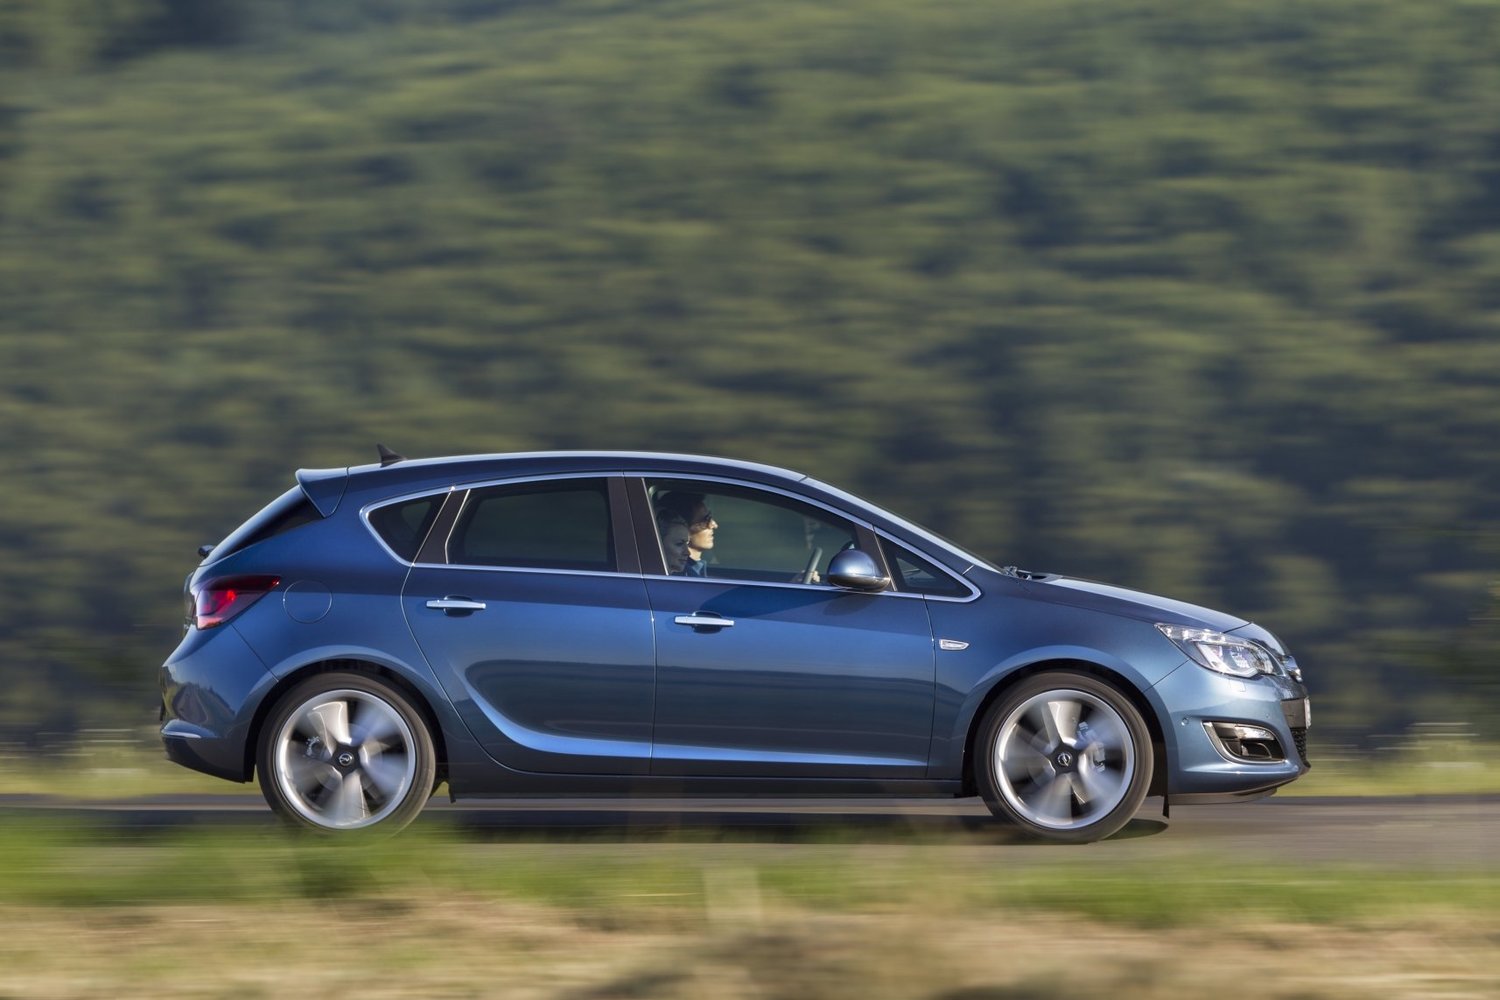 хэтчбек 5 дв. Opel Astra 2012 - 2016г выпуска модификация 1.2 MT (95 л.с.)